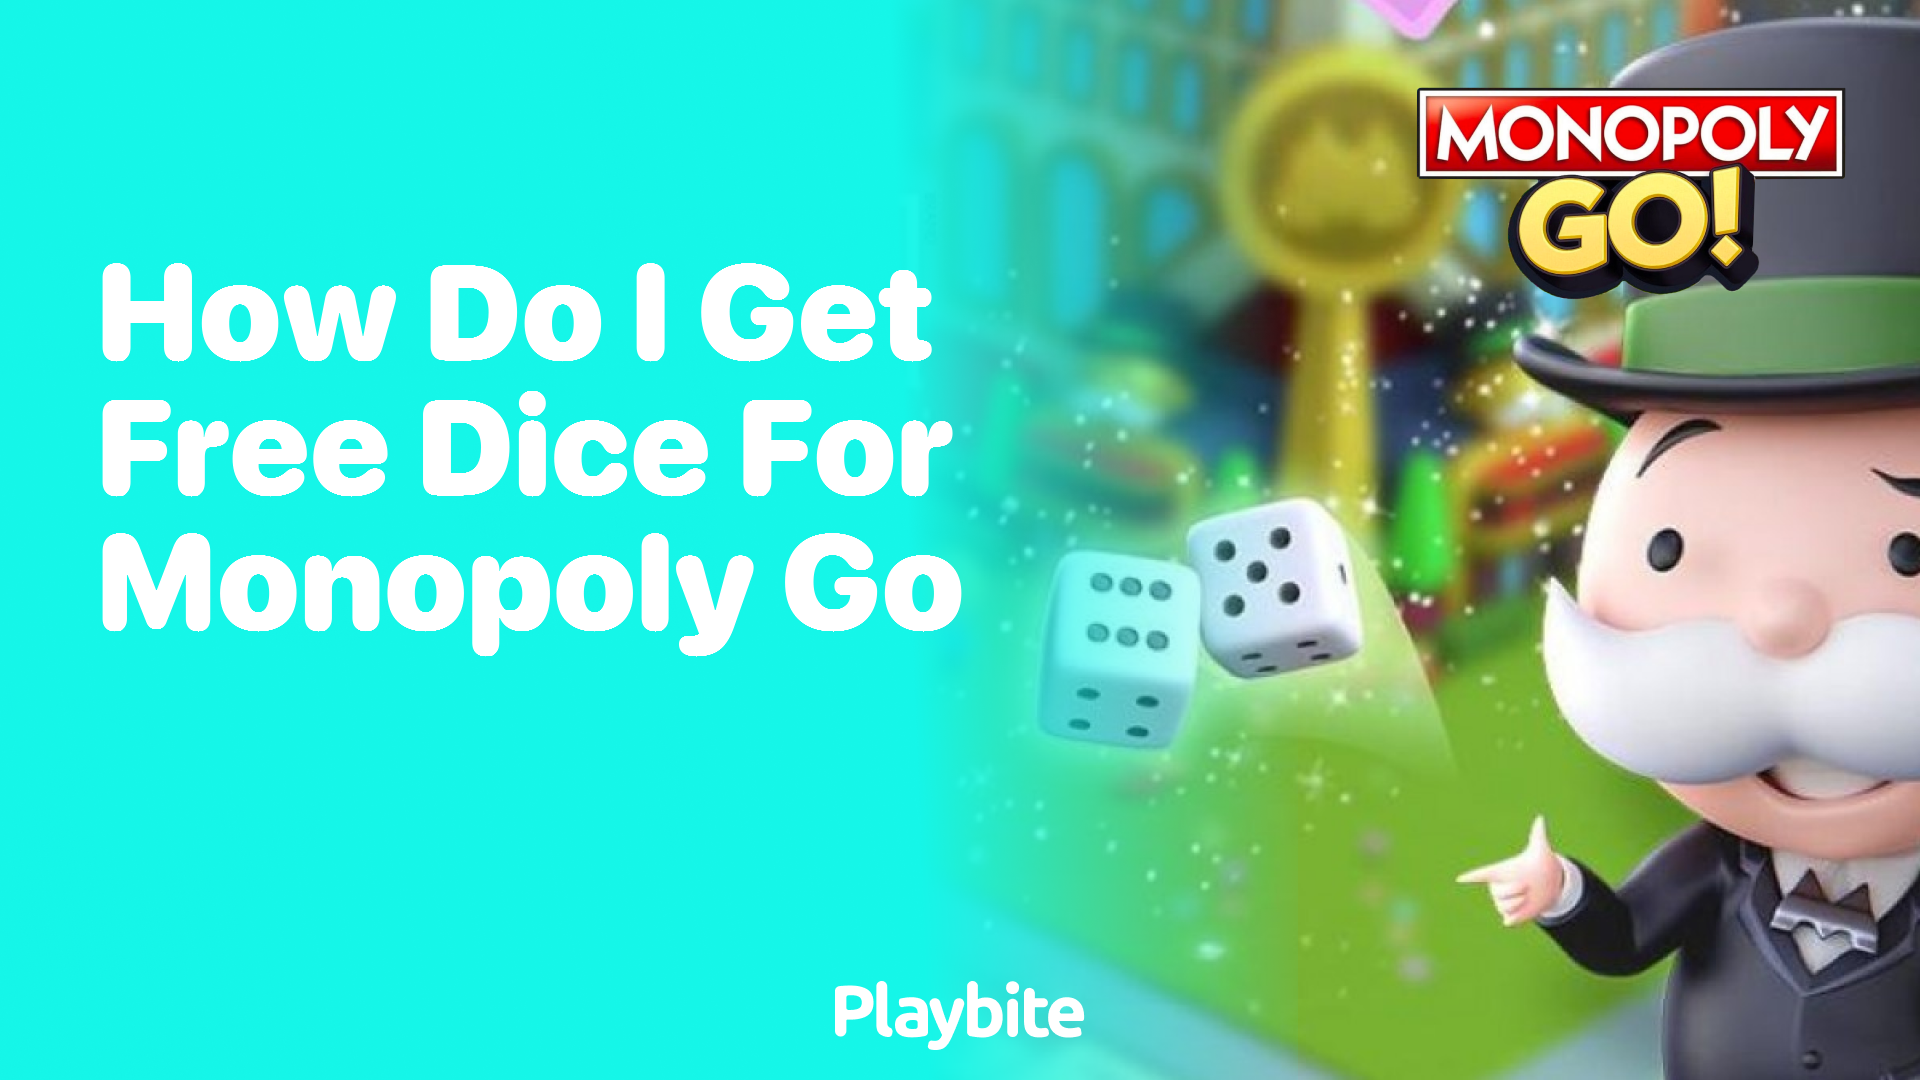 How Do I Get Free Dice for Monopoly Go?